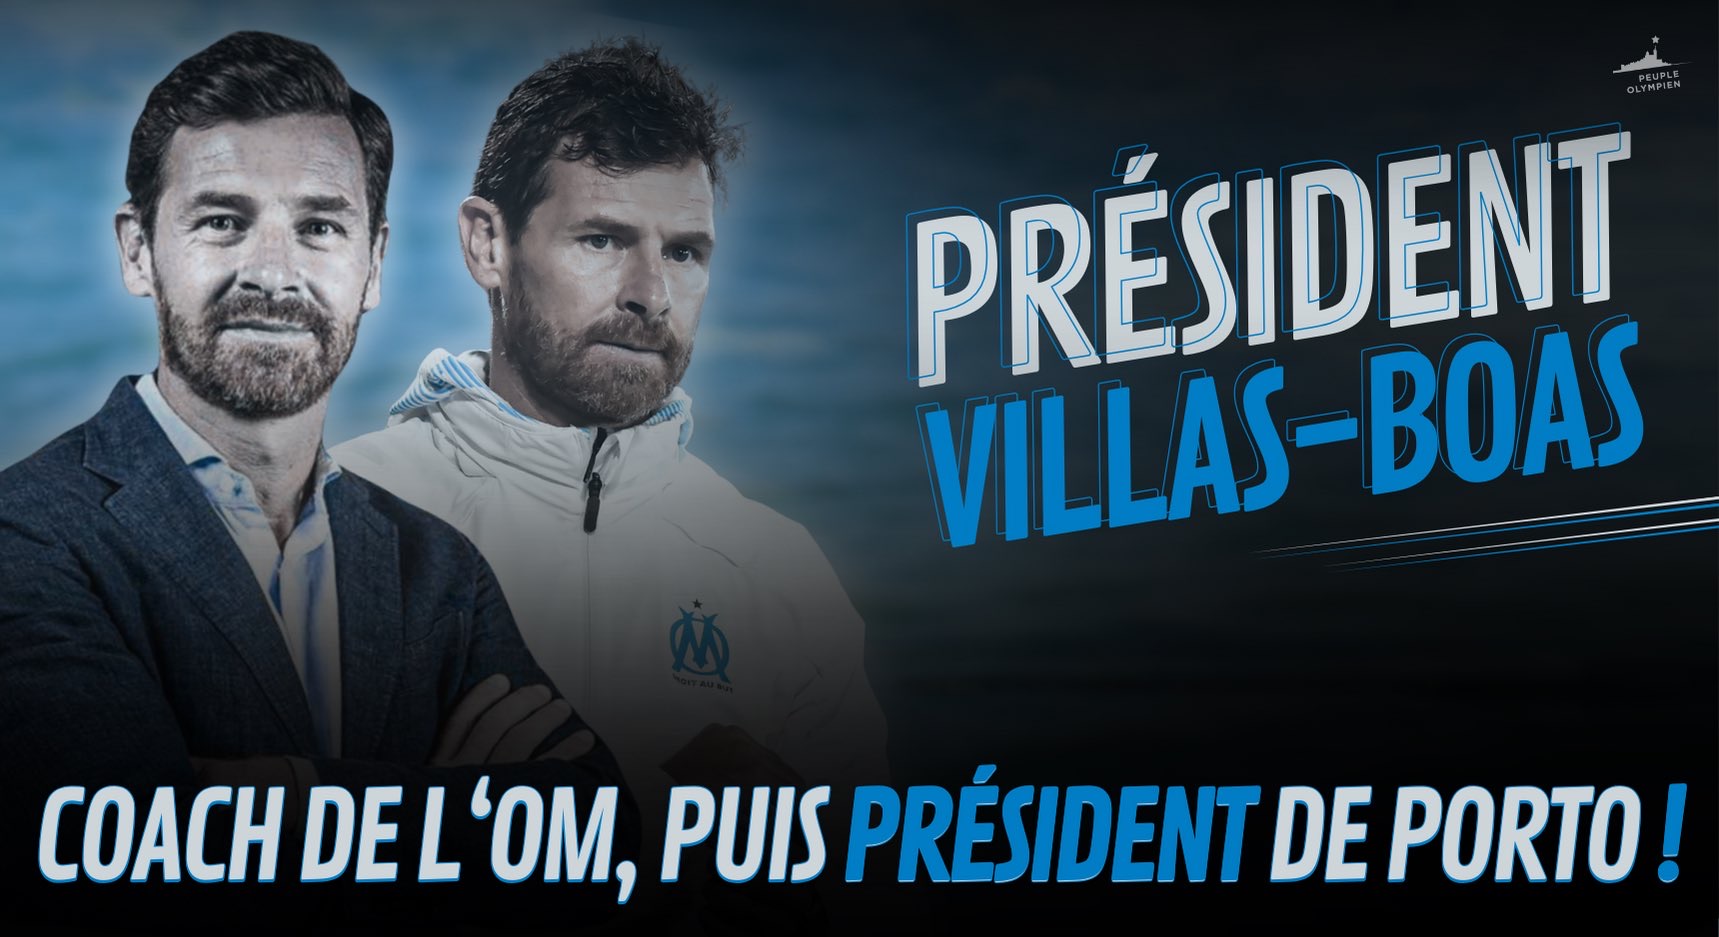 [Officiel] André Villas-Boas nouveau président du FC Porto